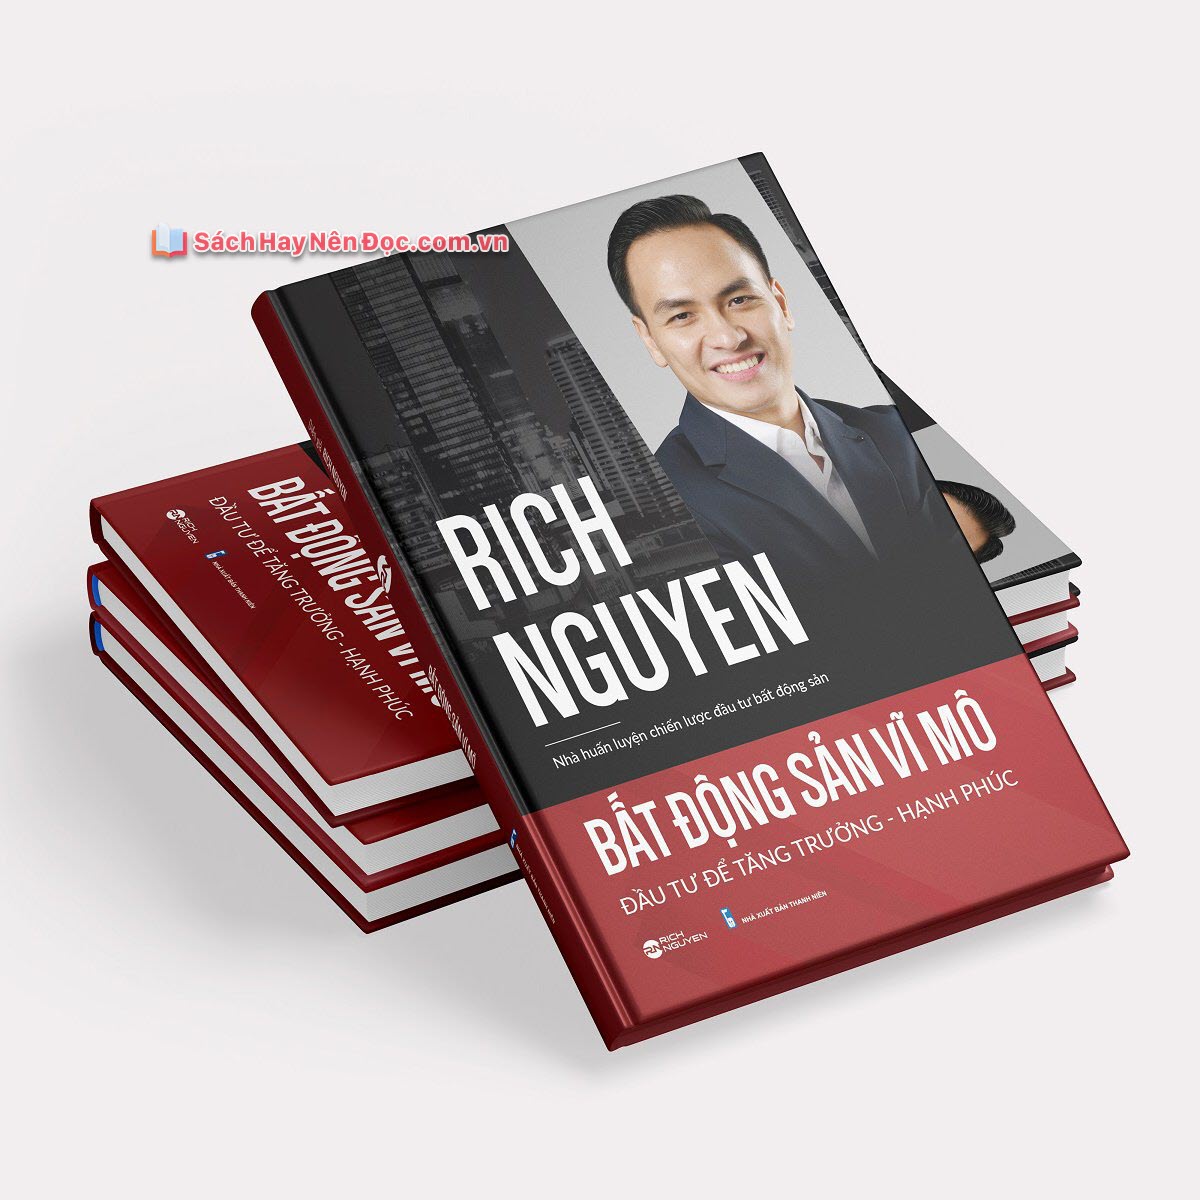 Bất động sản vĩ mô – Rich Nguyen